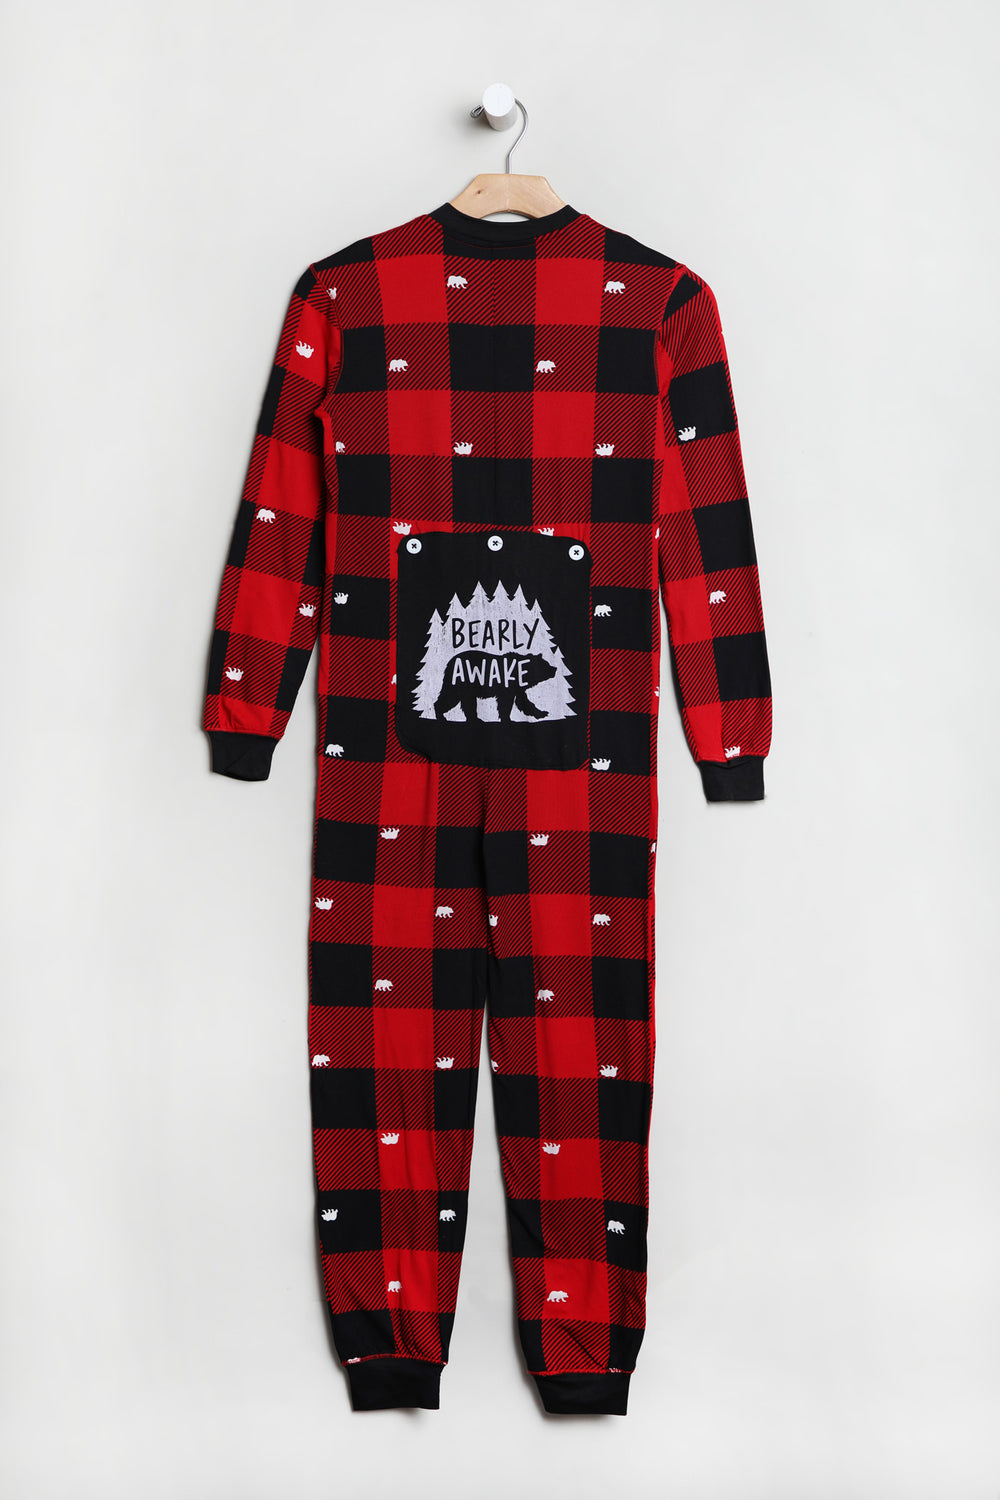 Combinaison Pyjama de Famille Imprimé Oursons sur Carreaux Junior Combinaison Pyjama de Famille Imprimé Oursons sur Carreaux Junior